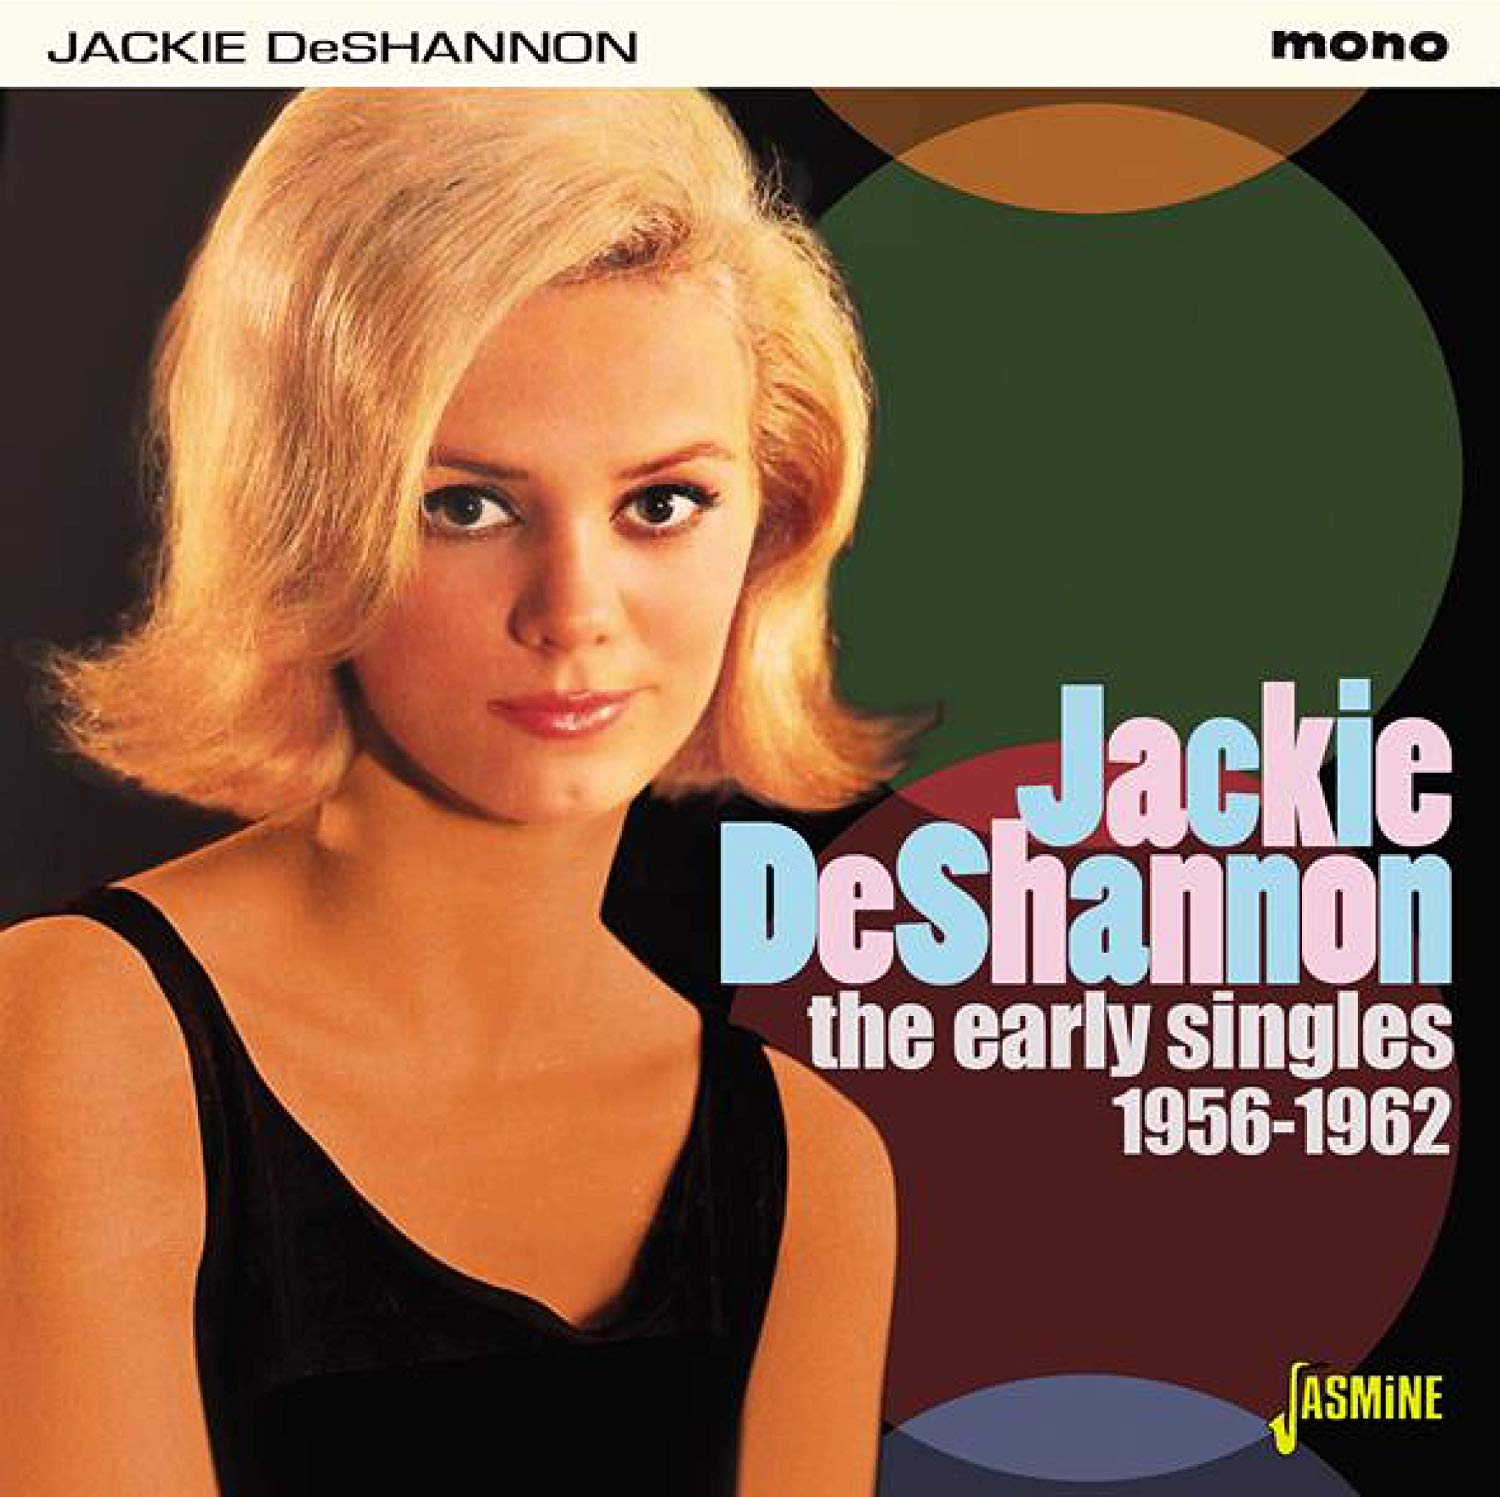 JACKIE DE SHANNON / ジャッキー・デシャノン / THE EARLY SINGLES 1956-1962 / 初期シングル集 1956-1962